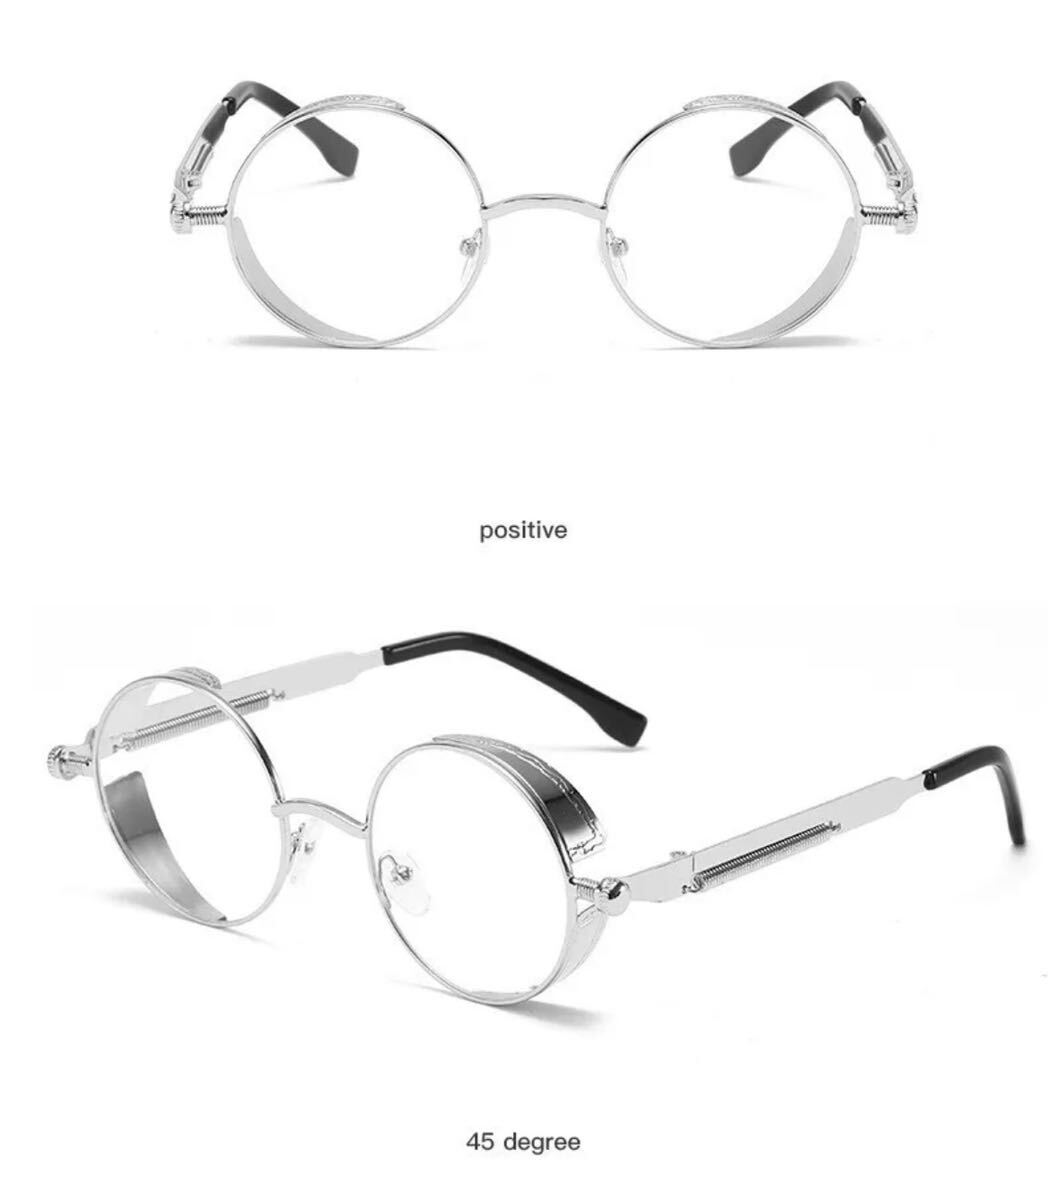 メタルパンクサングラス メガネ 眼鏡 ユニセックス ファッション サングラス メタル パンク スチームパンク 丸眼鏡 丸メガネ クリア銀 2844_画像2